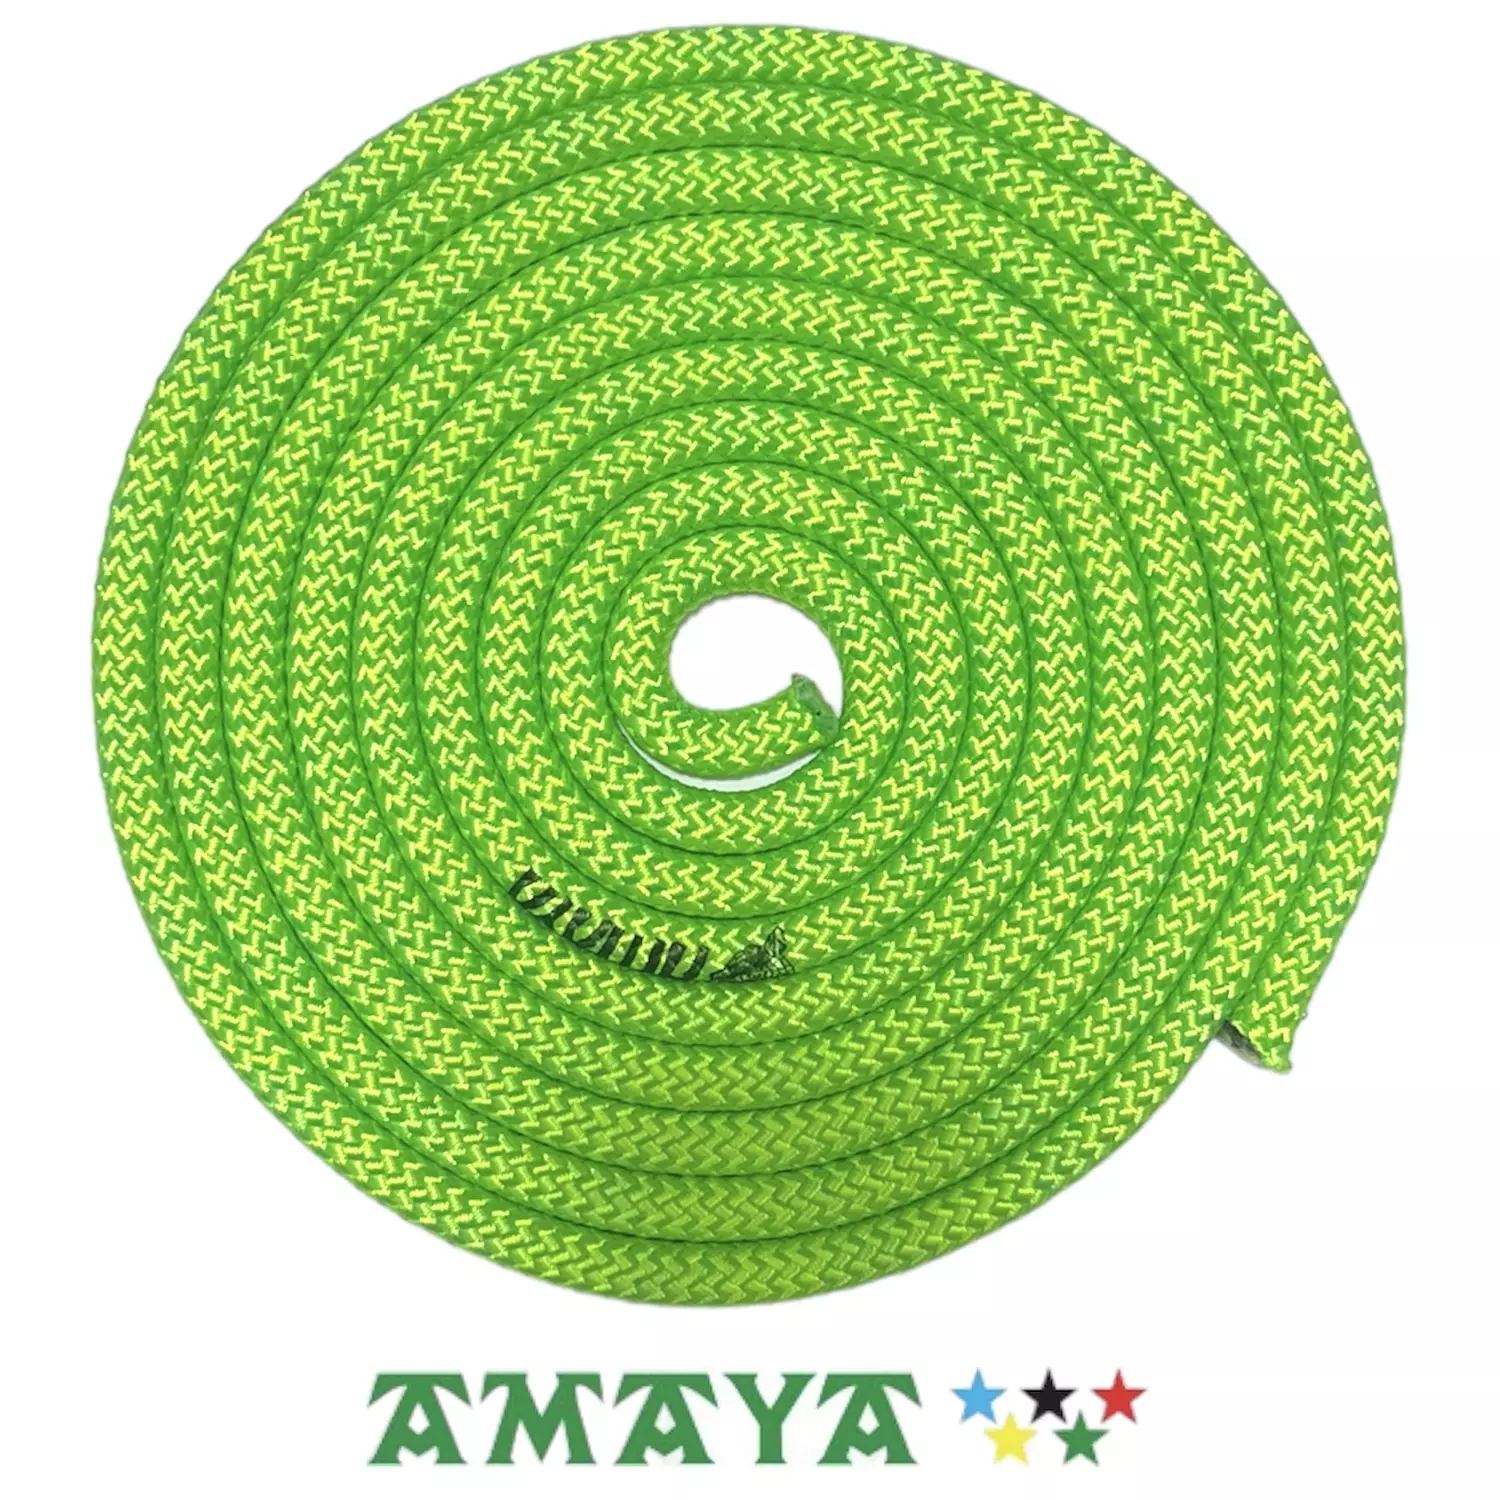 Amaya-Monocolor Rope FIG 3m hover image